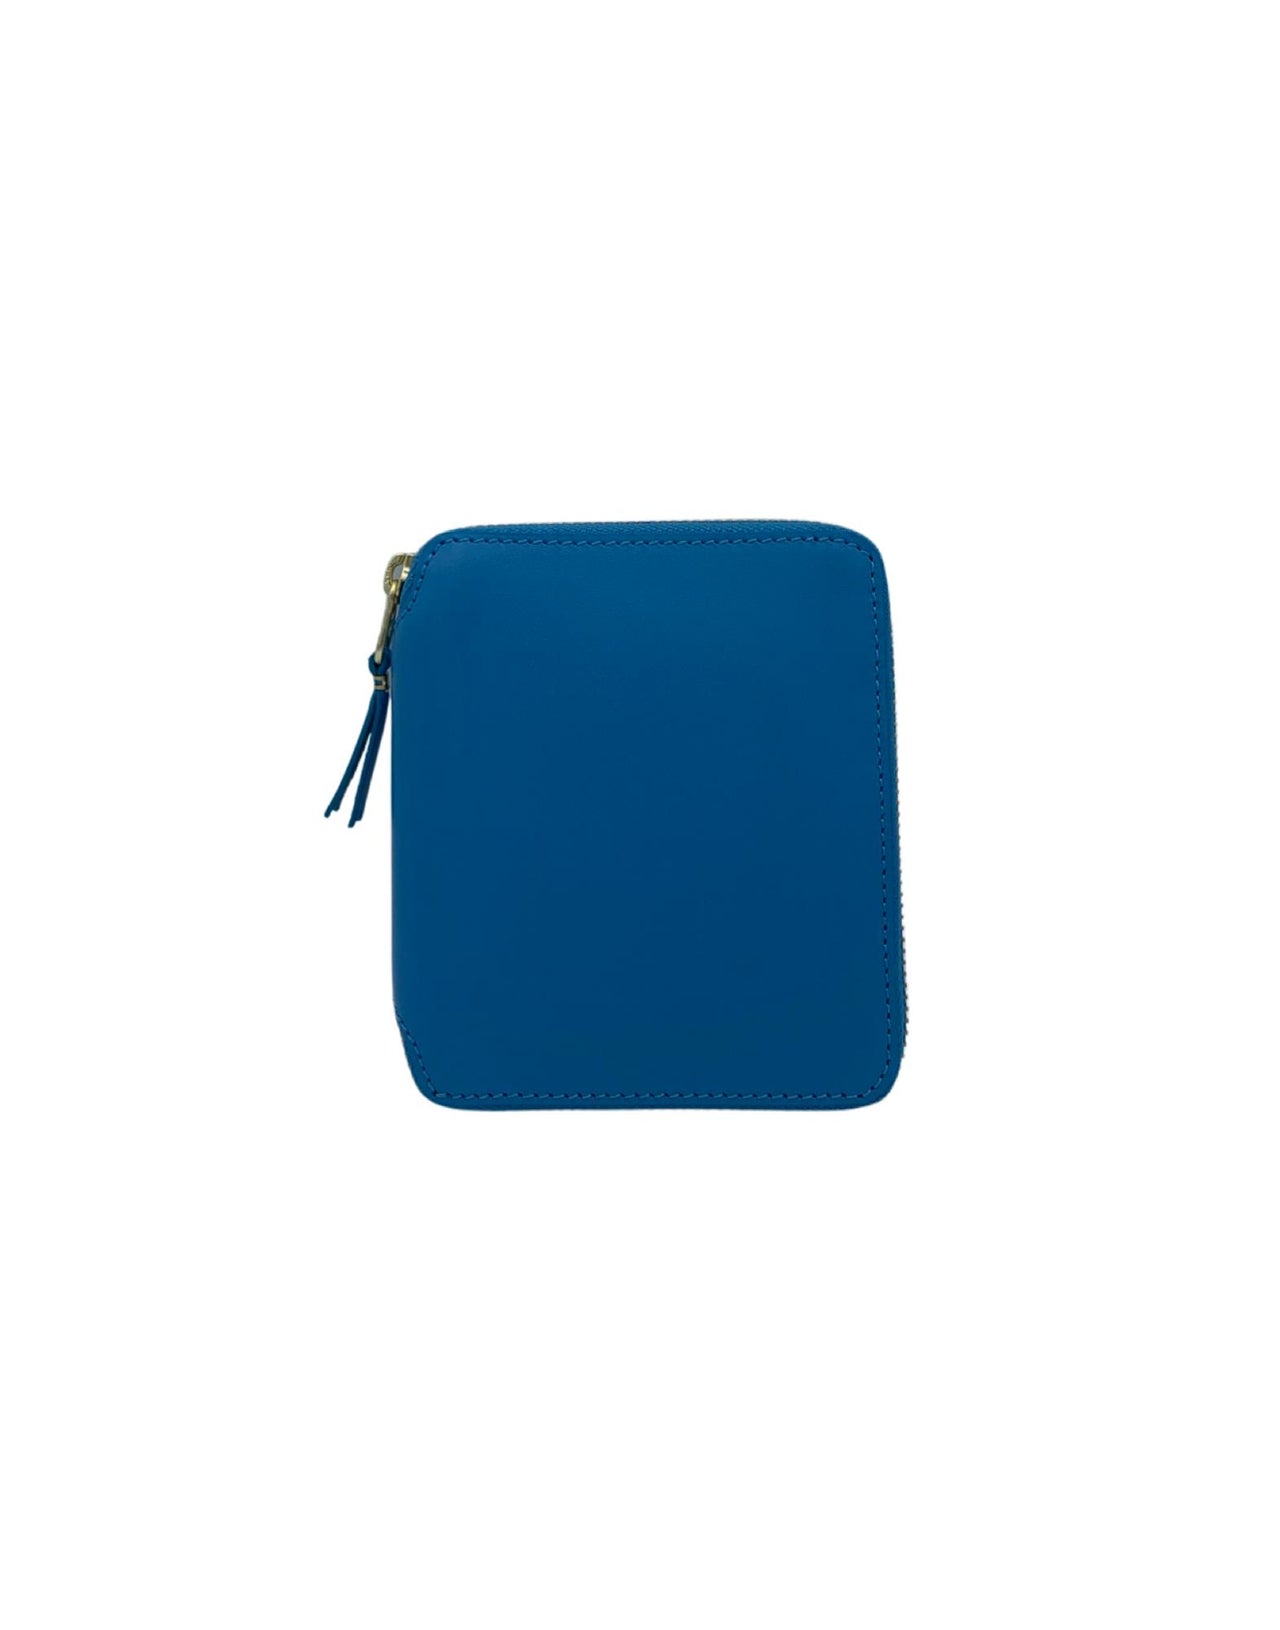 Wallet cdg medium blue wallet